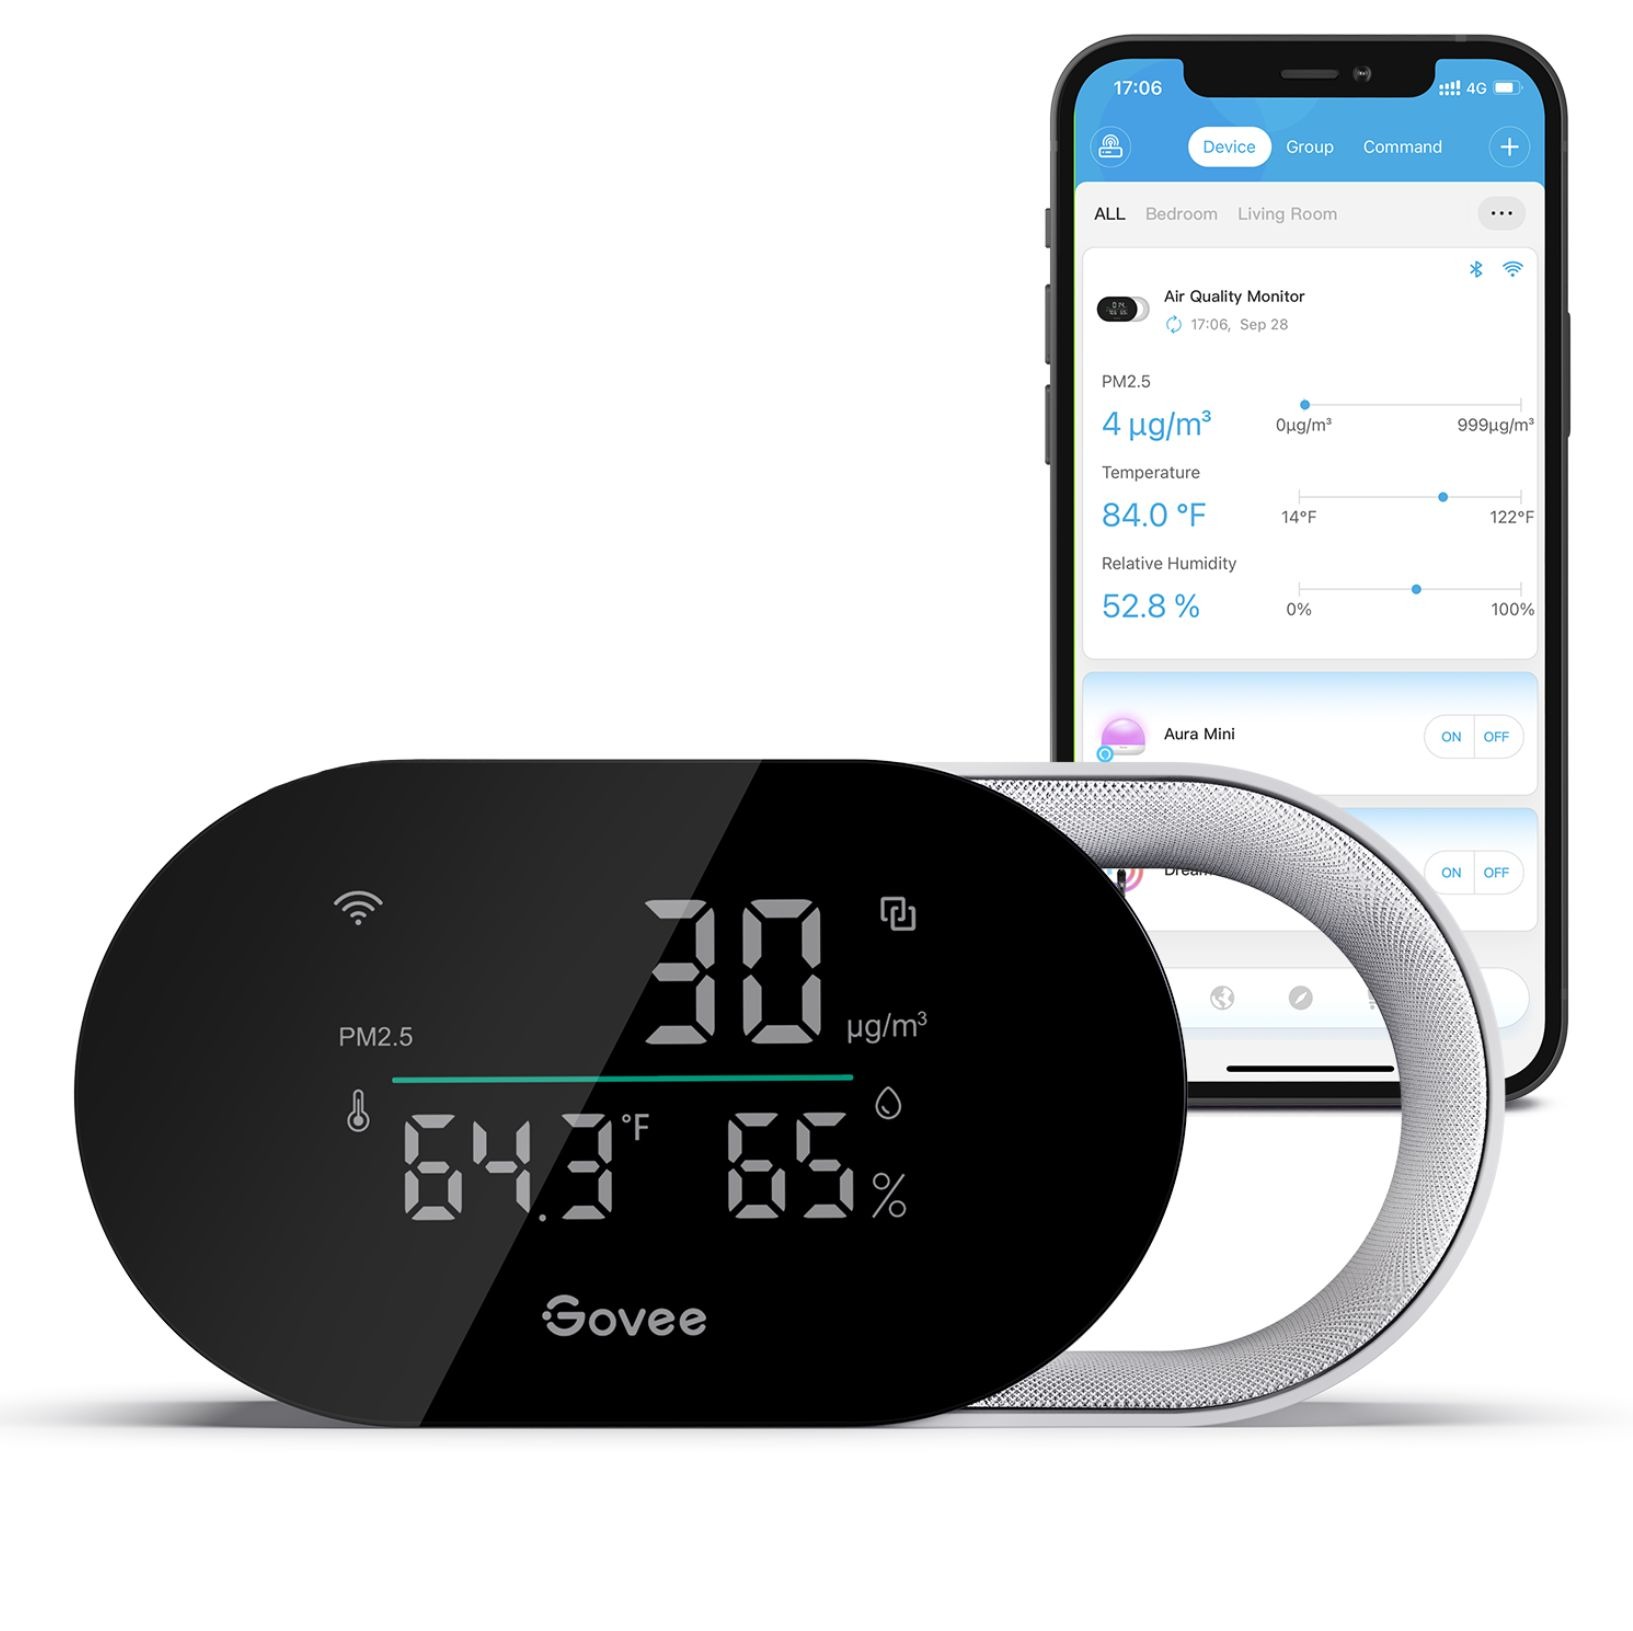 O Govee Smart Air Quality Monitor posicionado na frente de um smartphone que está exibindo o aplicativo Govee.